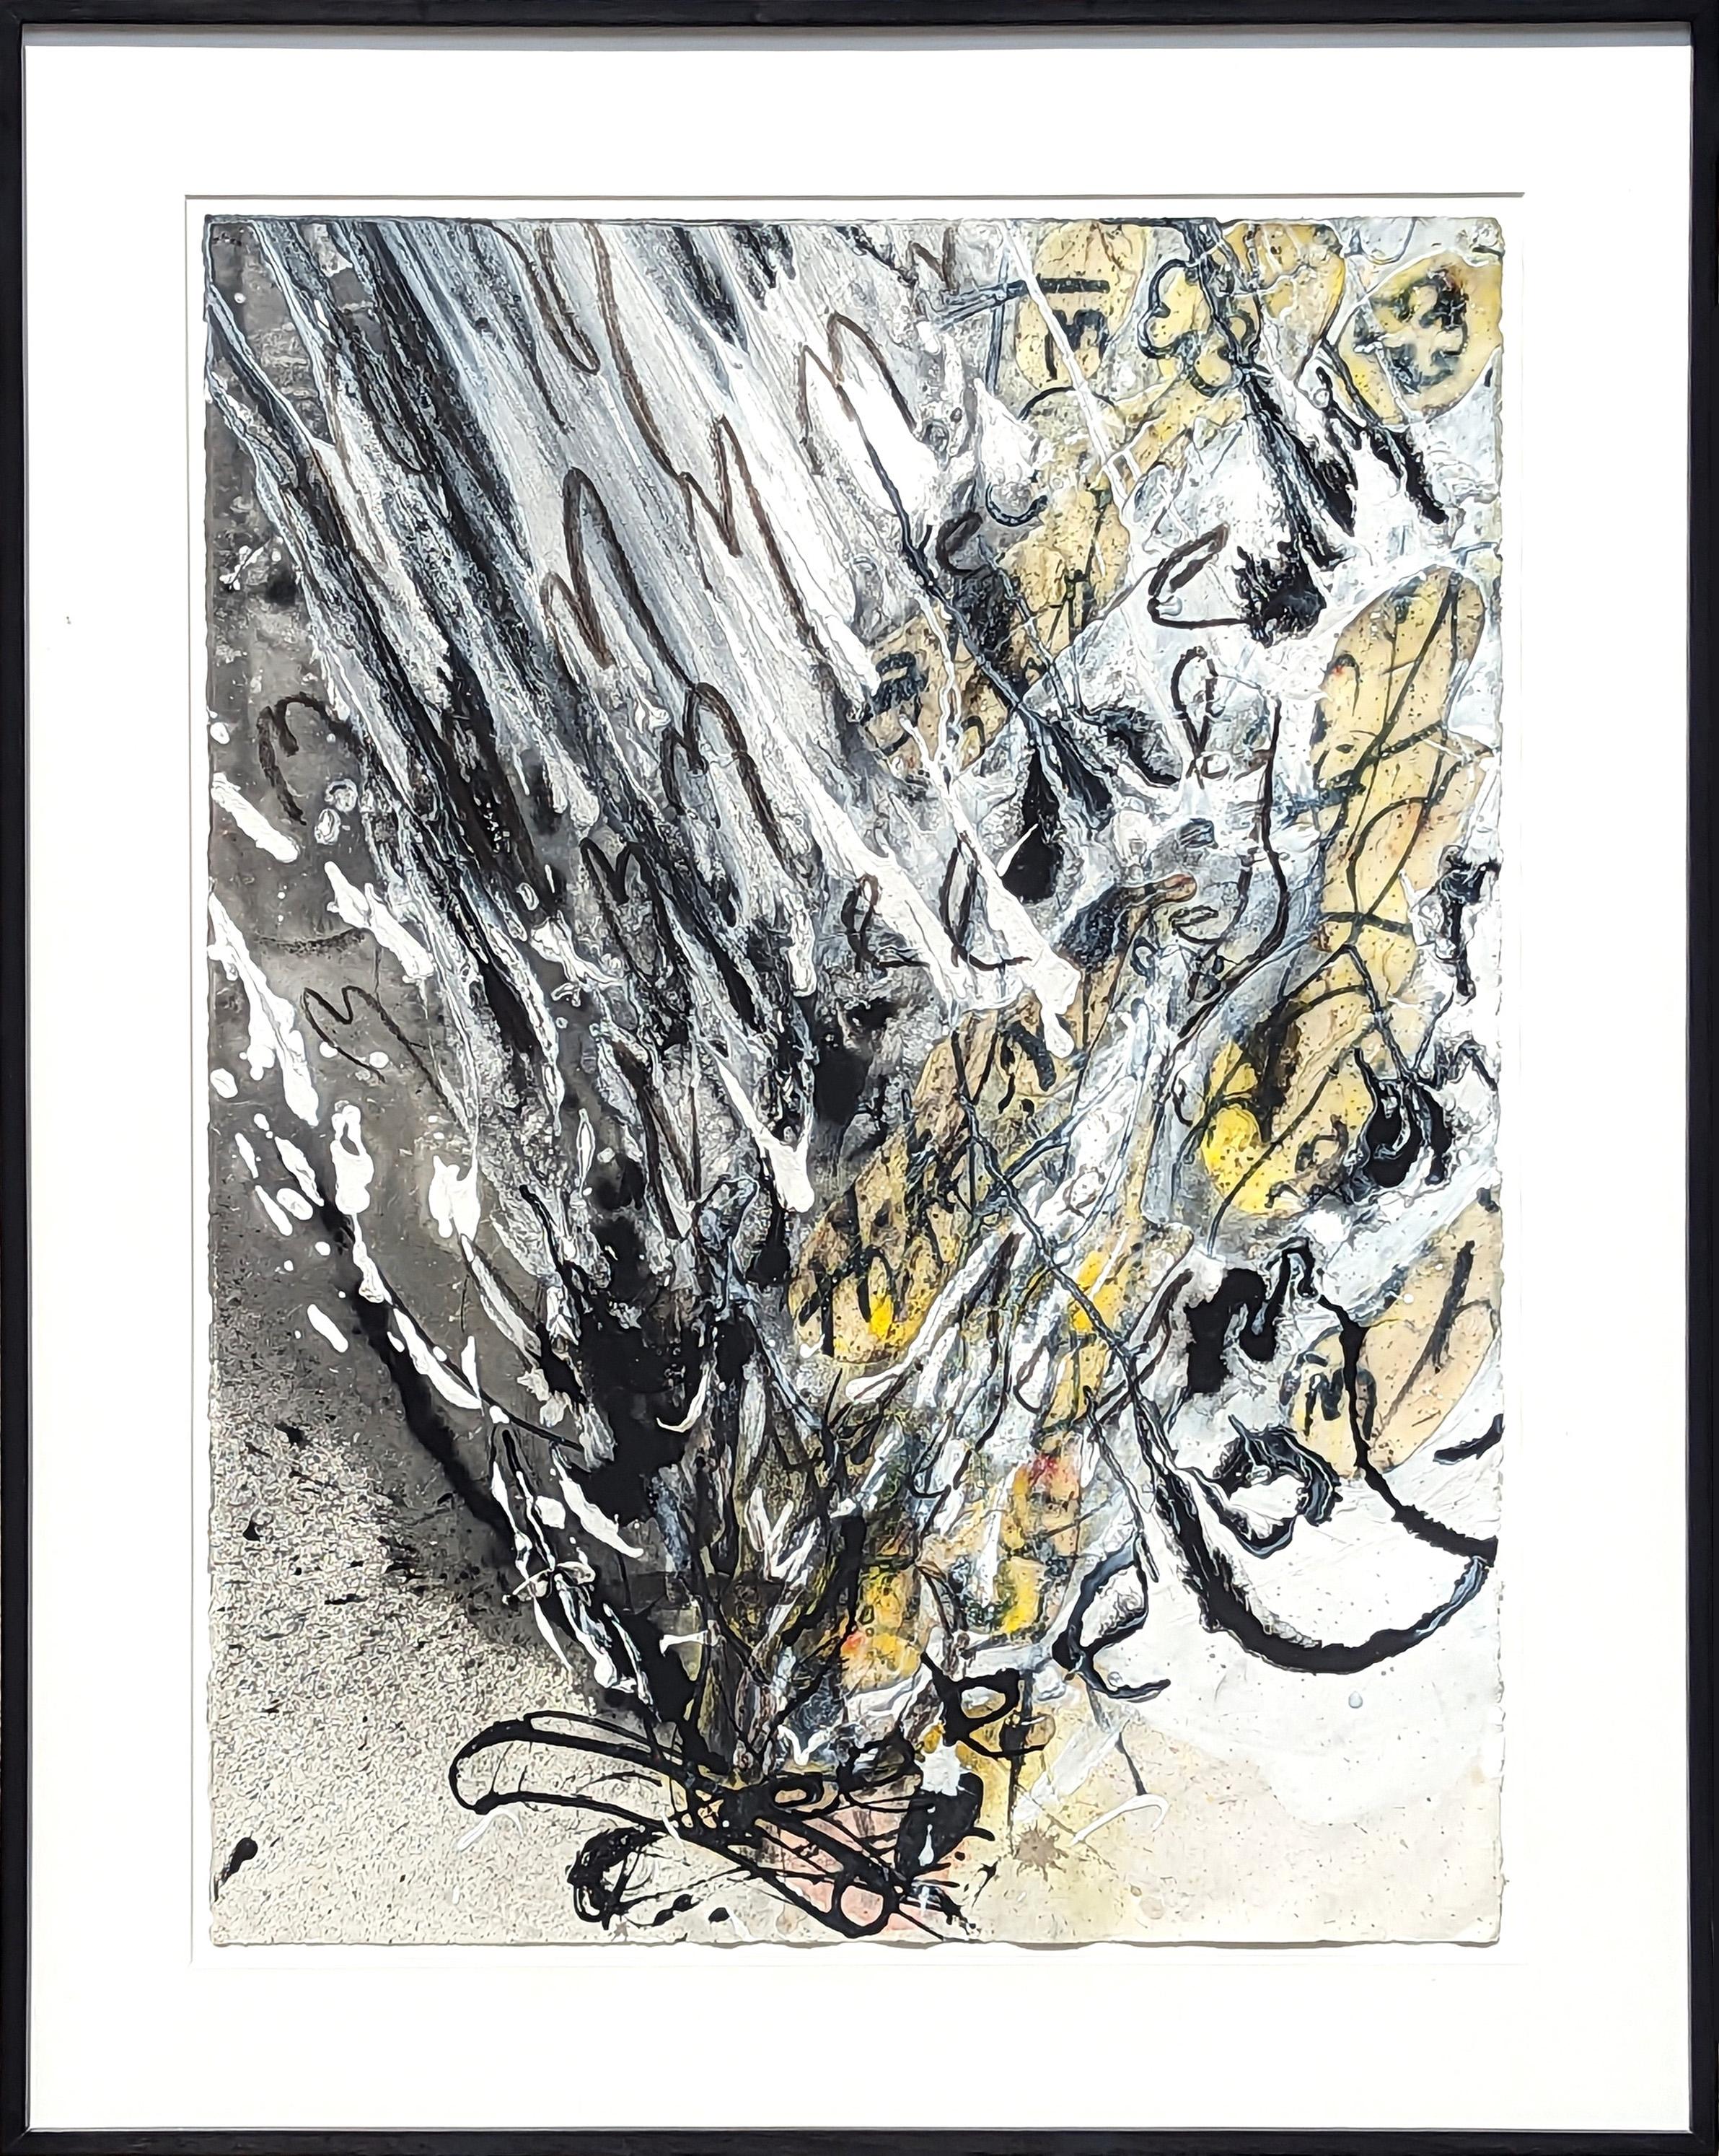 Suzanne McLelland Abstract Painting – "Them" Zeitgenössische abstrakte expressionistische Malerei in Schwarz, Weiß und Gelb